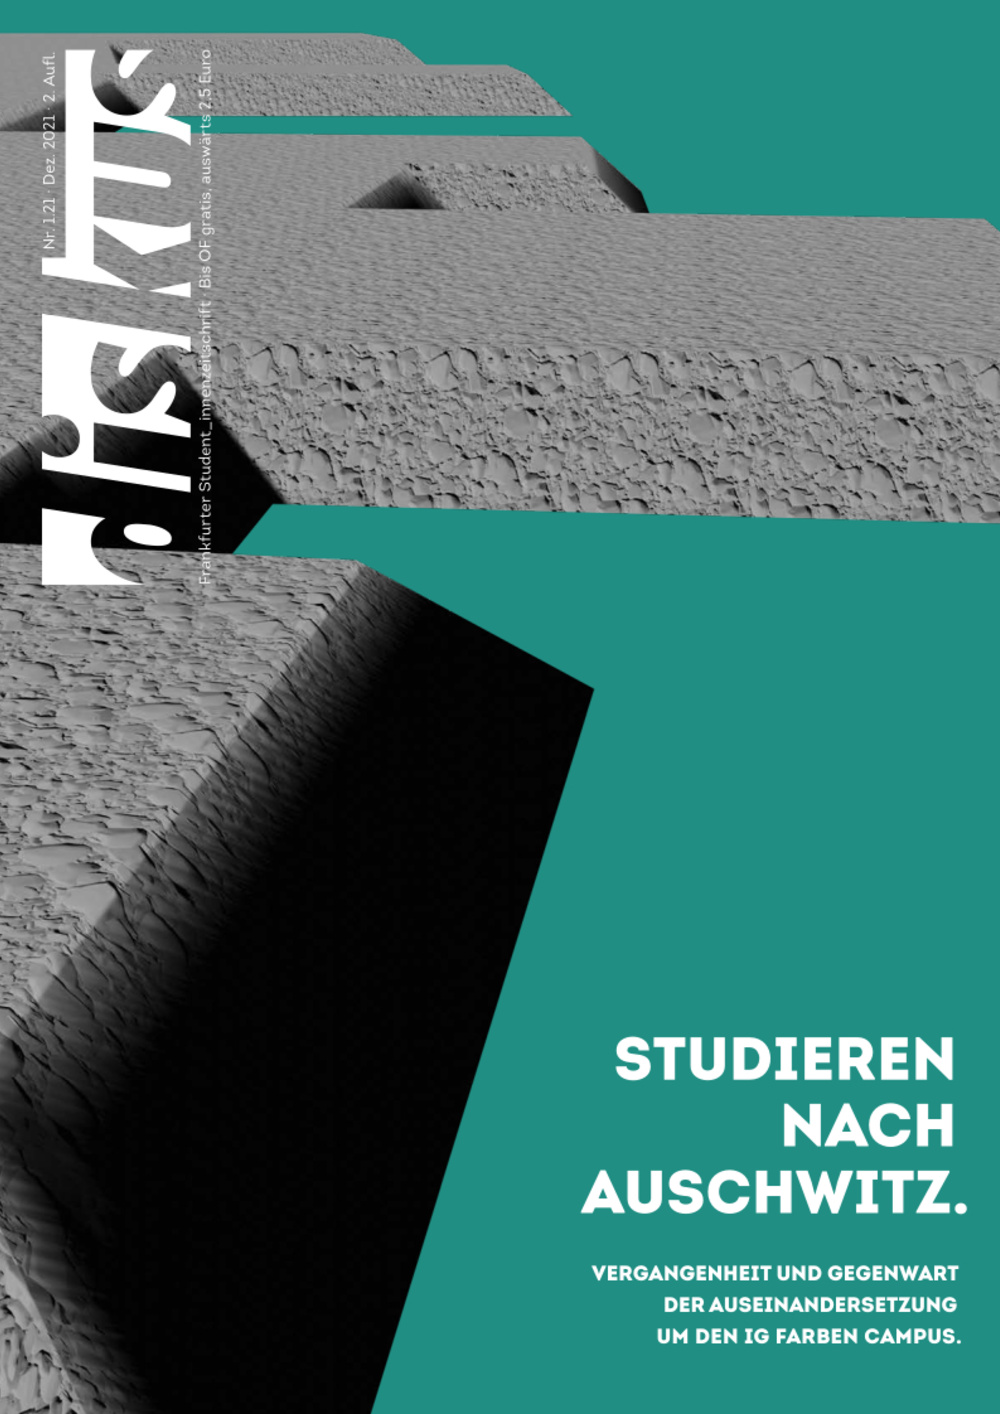 Cover der Ausgabe. Ein brutalistisch verfremdetes, graues IG Farben Gebäude vor grünem Hintergrund